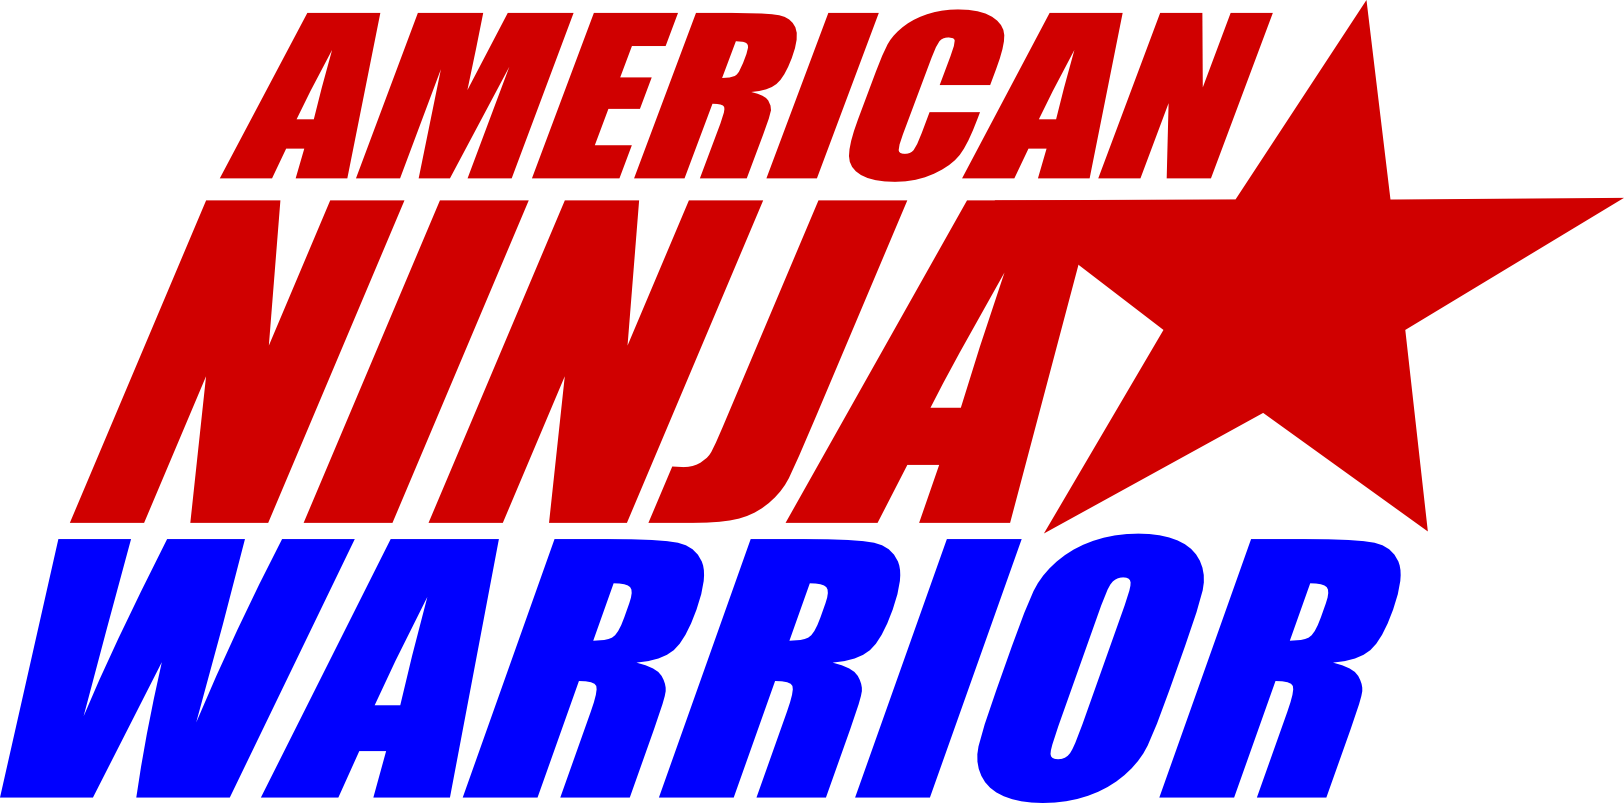 American Ninja Warrior Wallpapers Top Free American Ninja Warrior Backgrounds Wallpaperaccess - roblox ninja warrior stage 3